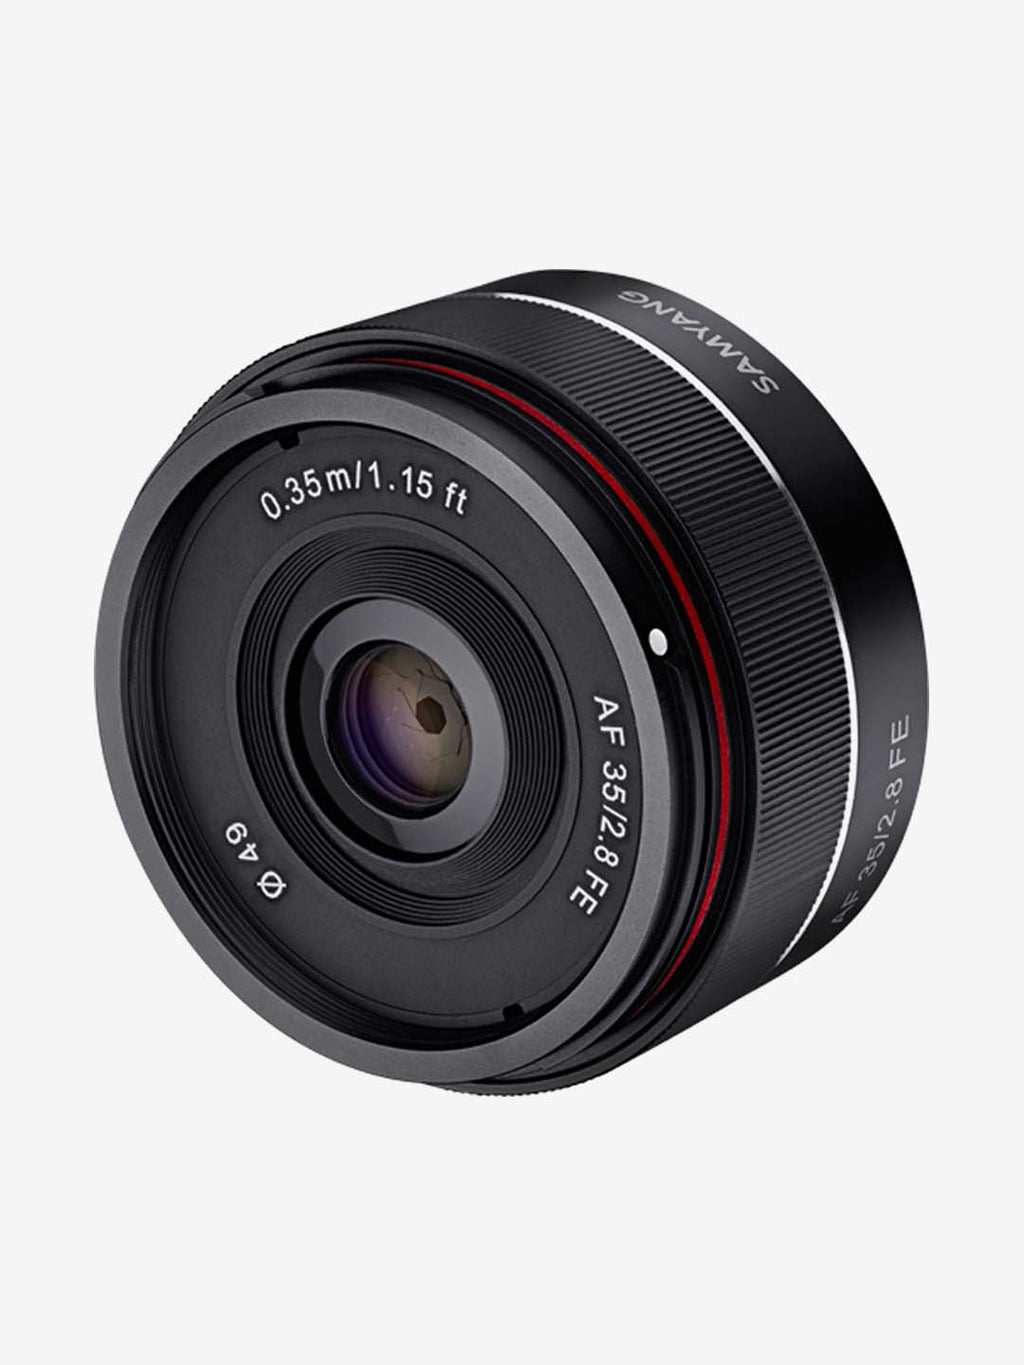 Sony E-माउंट कैमरा के लिए सैमयांग AF 35mm F2.8 FE प्राइम लेंस (काला)